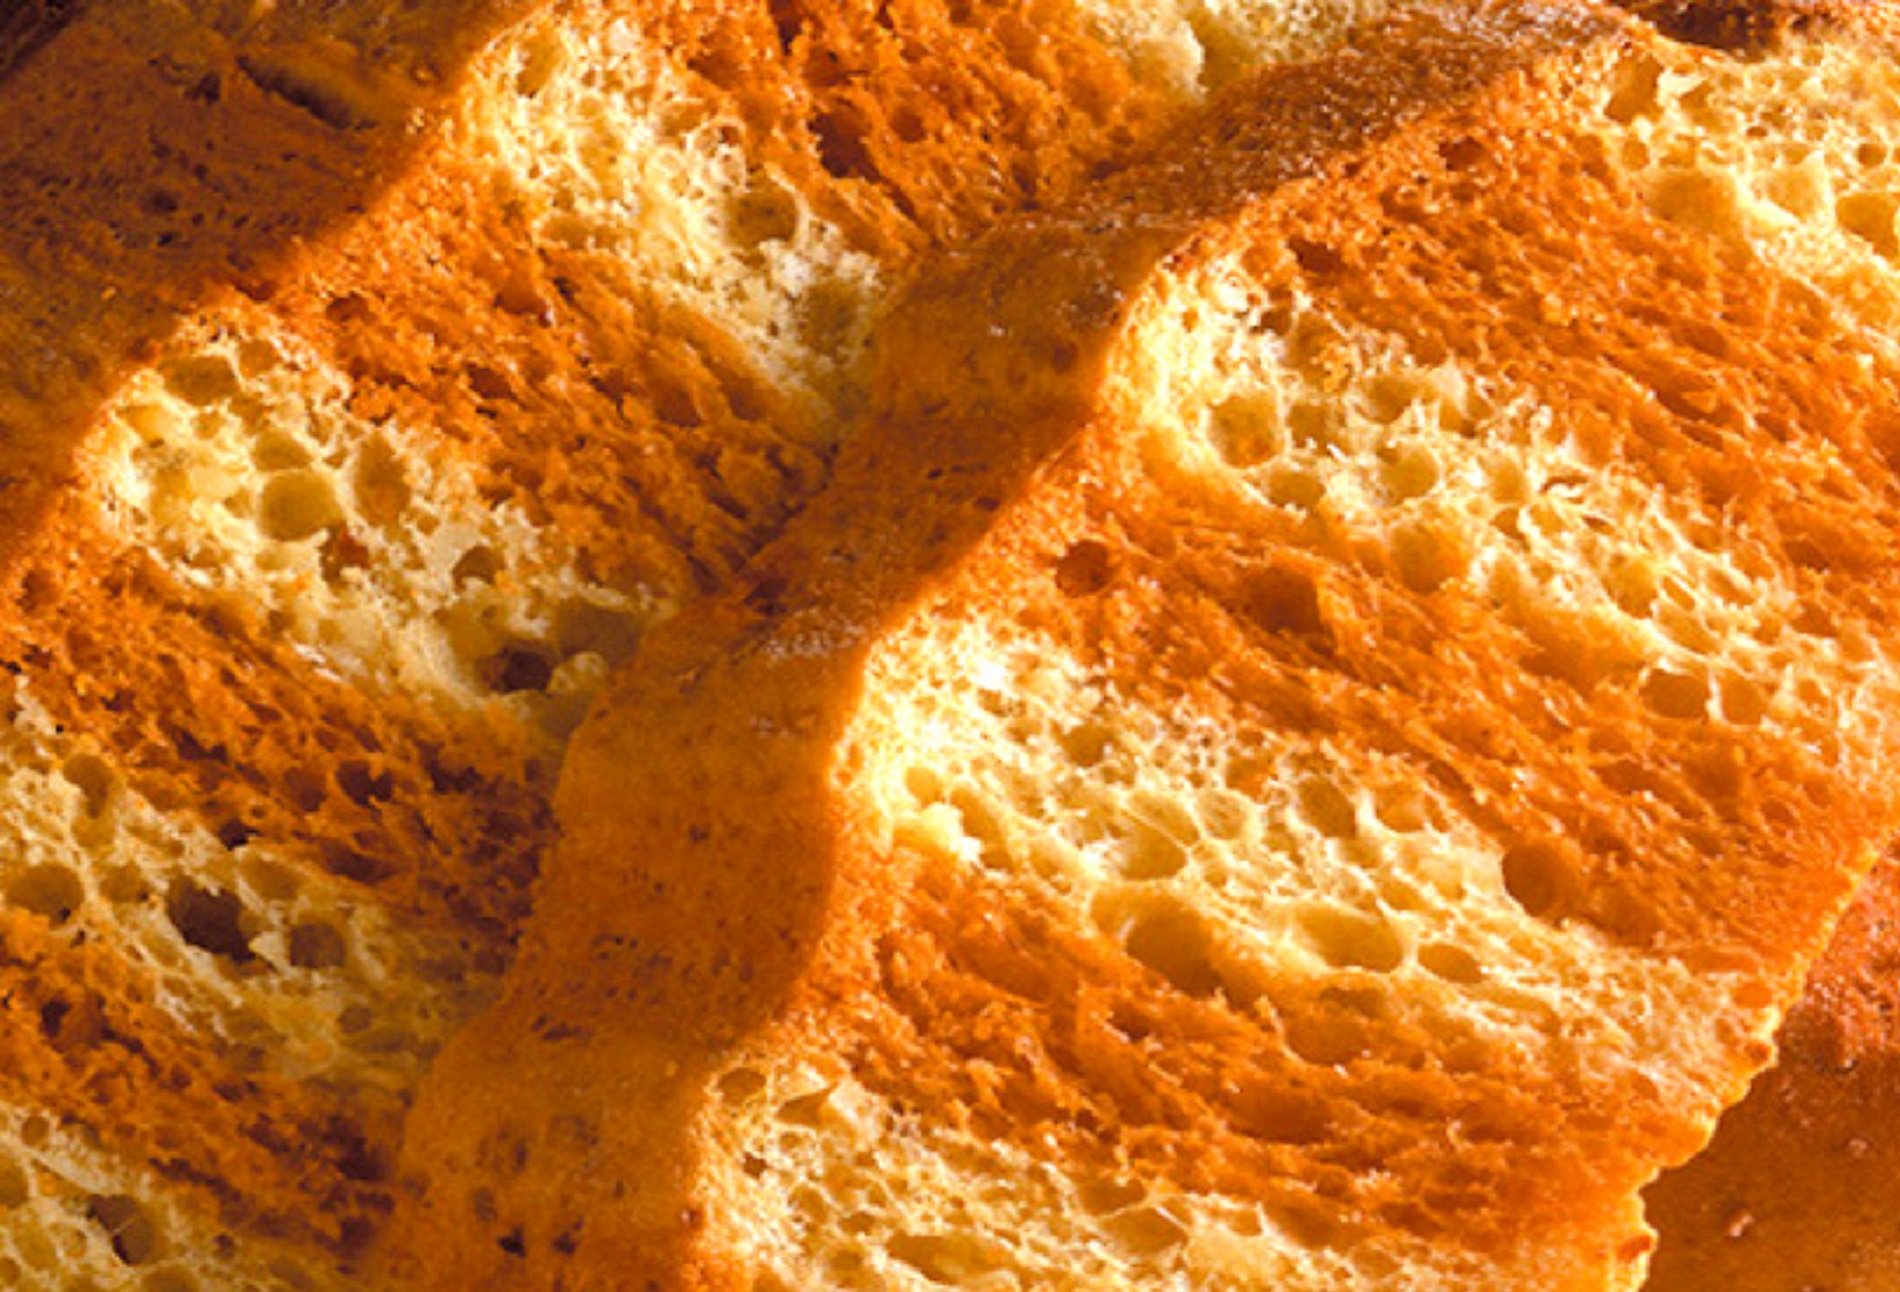 El mejor pan de Sant Jordi 2023 es para esta panadería centenaria de Barcelona